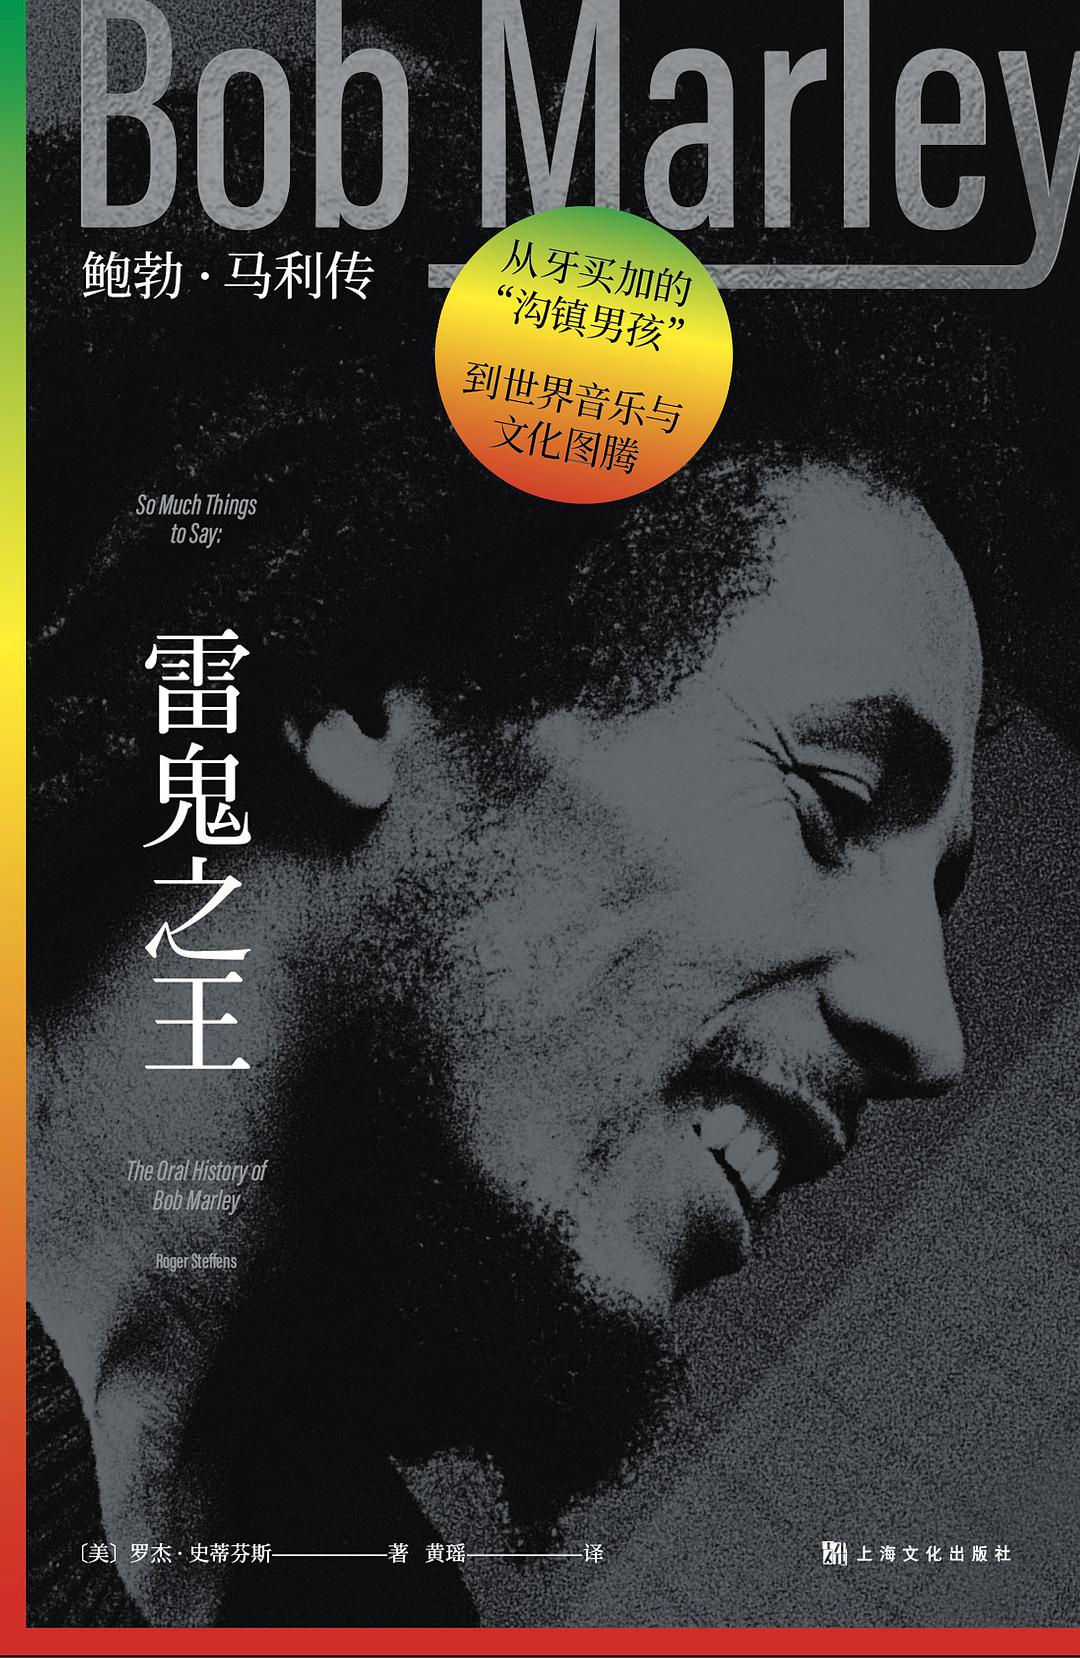 雷鬼之王 鲍勃·马利传 the oral history of Bob Marley